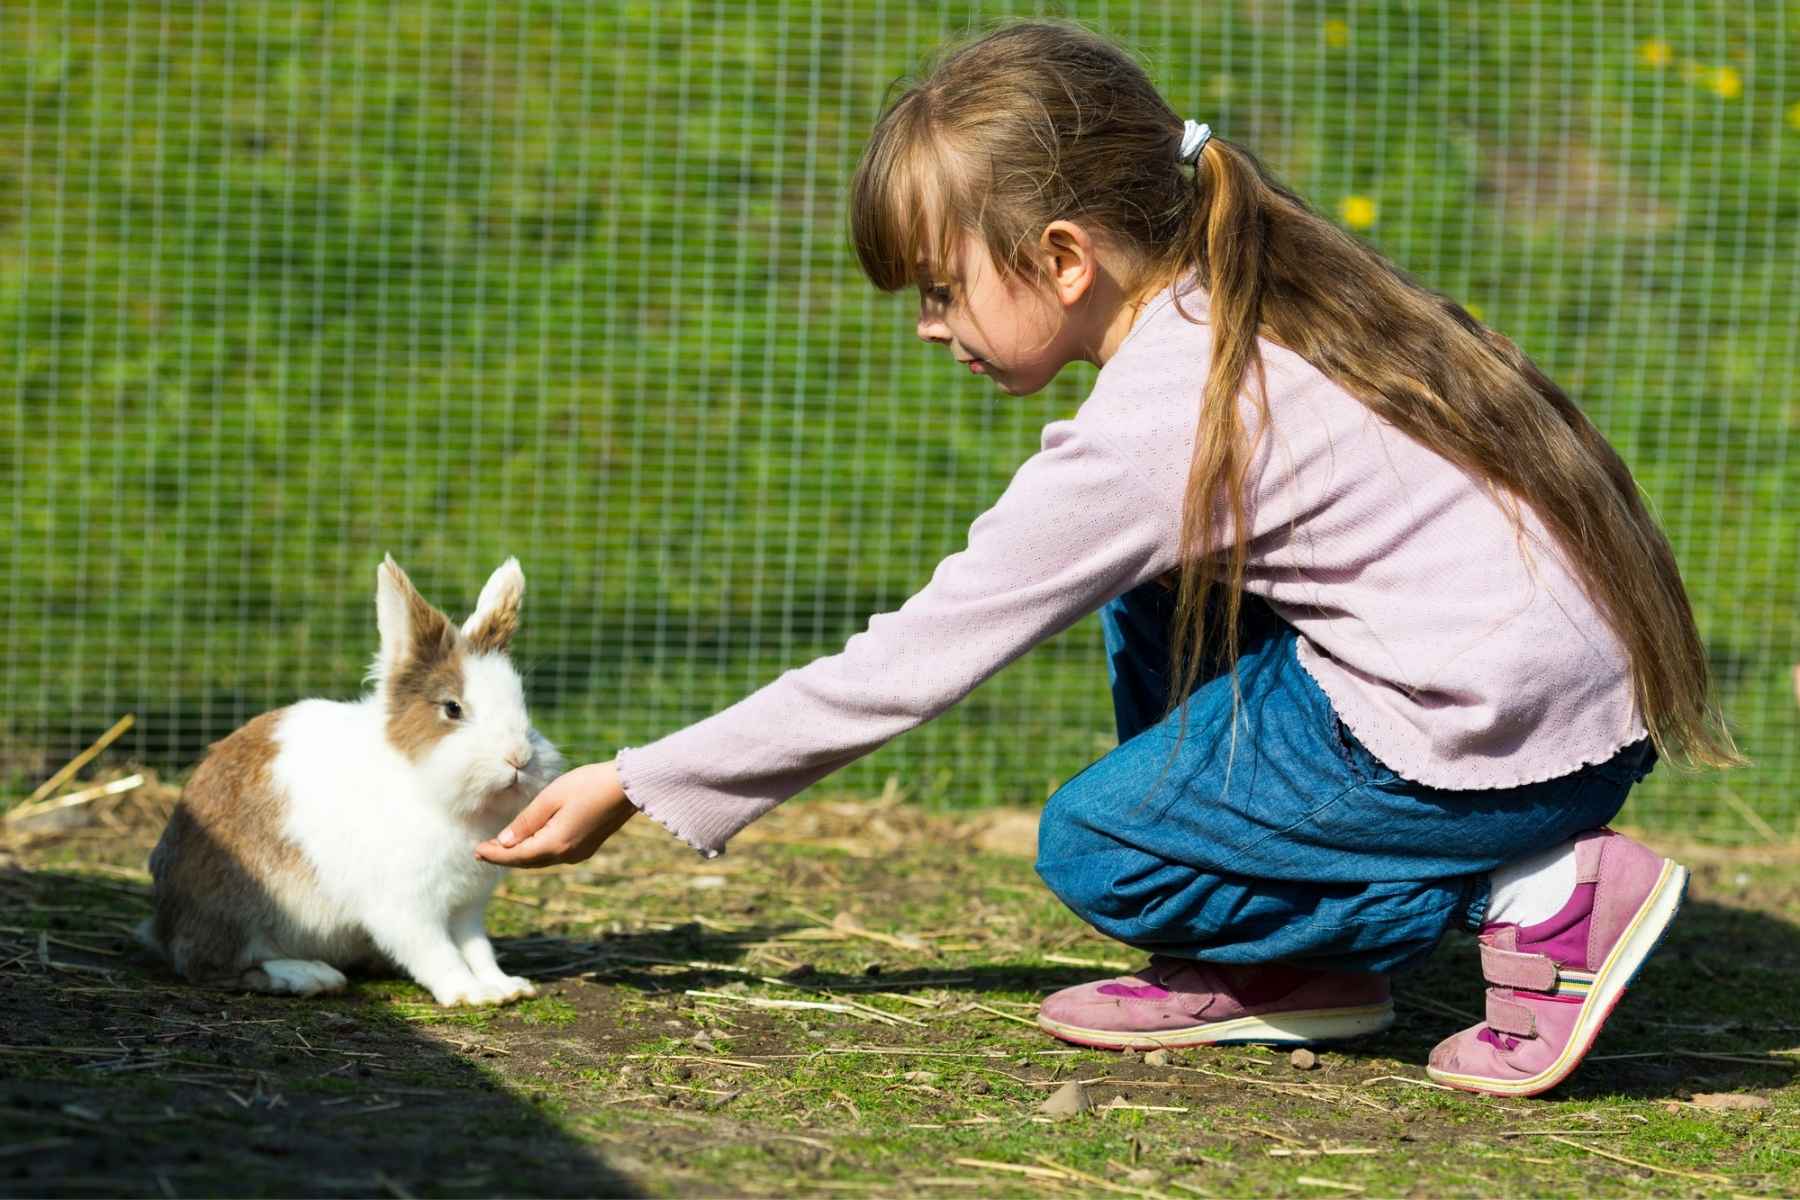 Girl feeding a cute rabbit